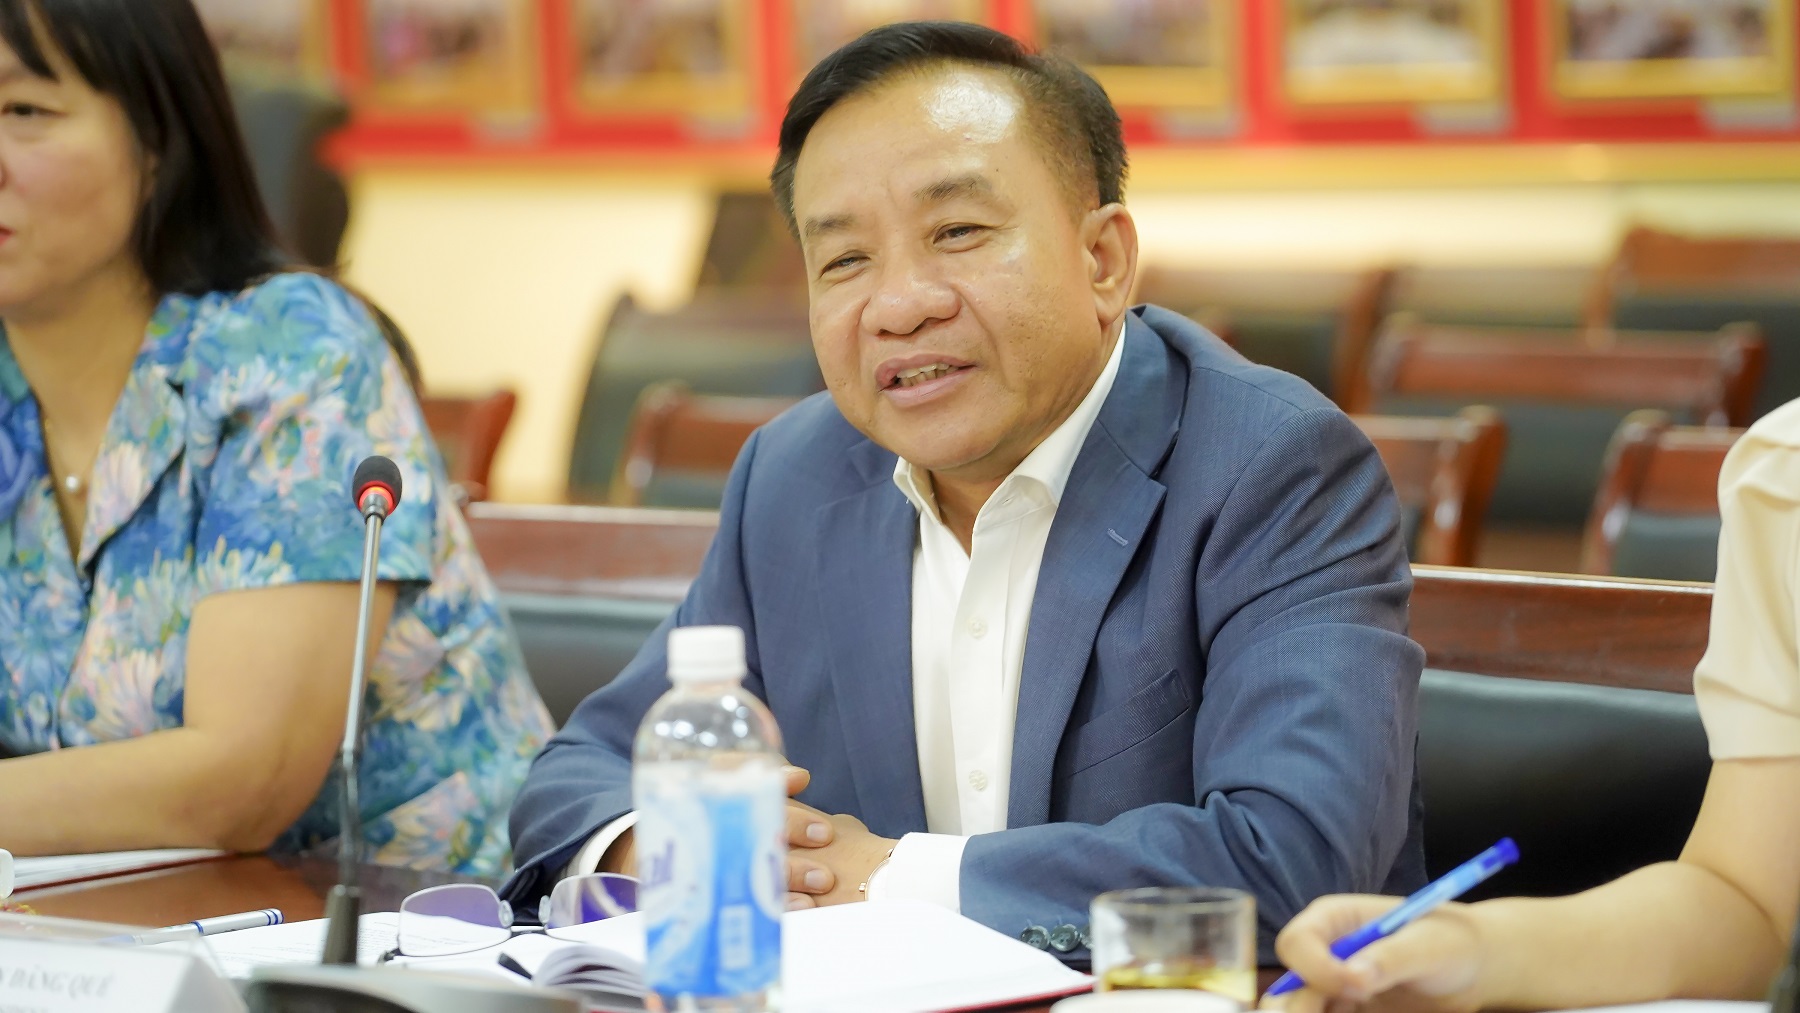 TS. Nguyễn Đăng Quế - Phó Giám đốc Học viện Hành chính Quốc gia bày tỏ mong muốn bước tiến mới với các đề xuất hợp tác trong tương lai